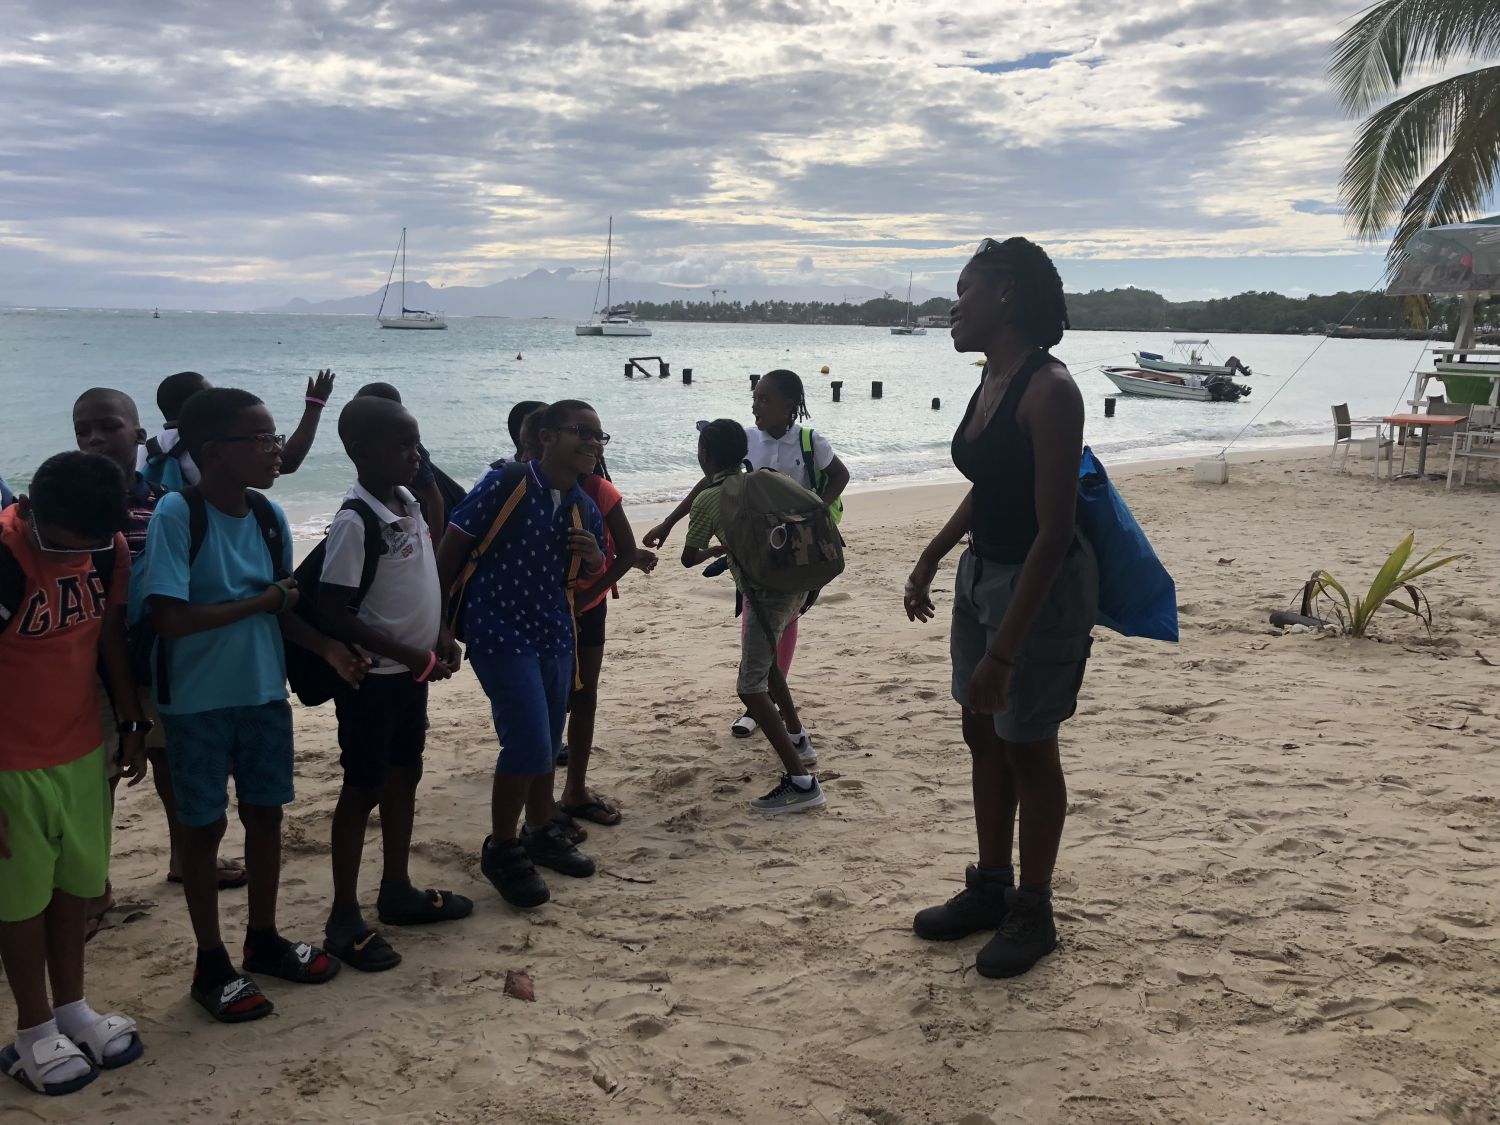 20 élèves de Quartier d’Orléans en séjour pédagogique en Guadeloupe